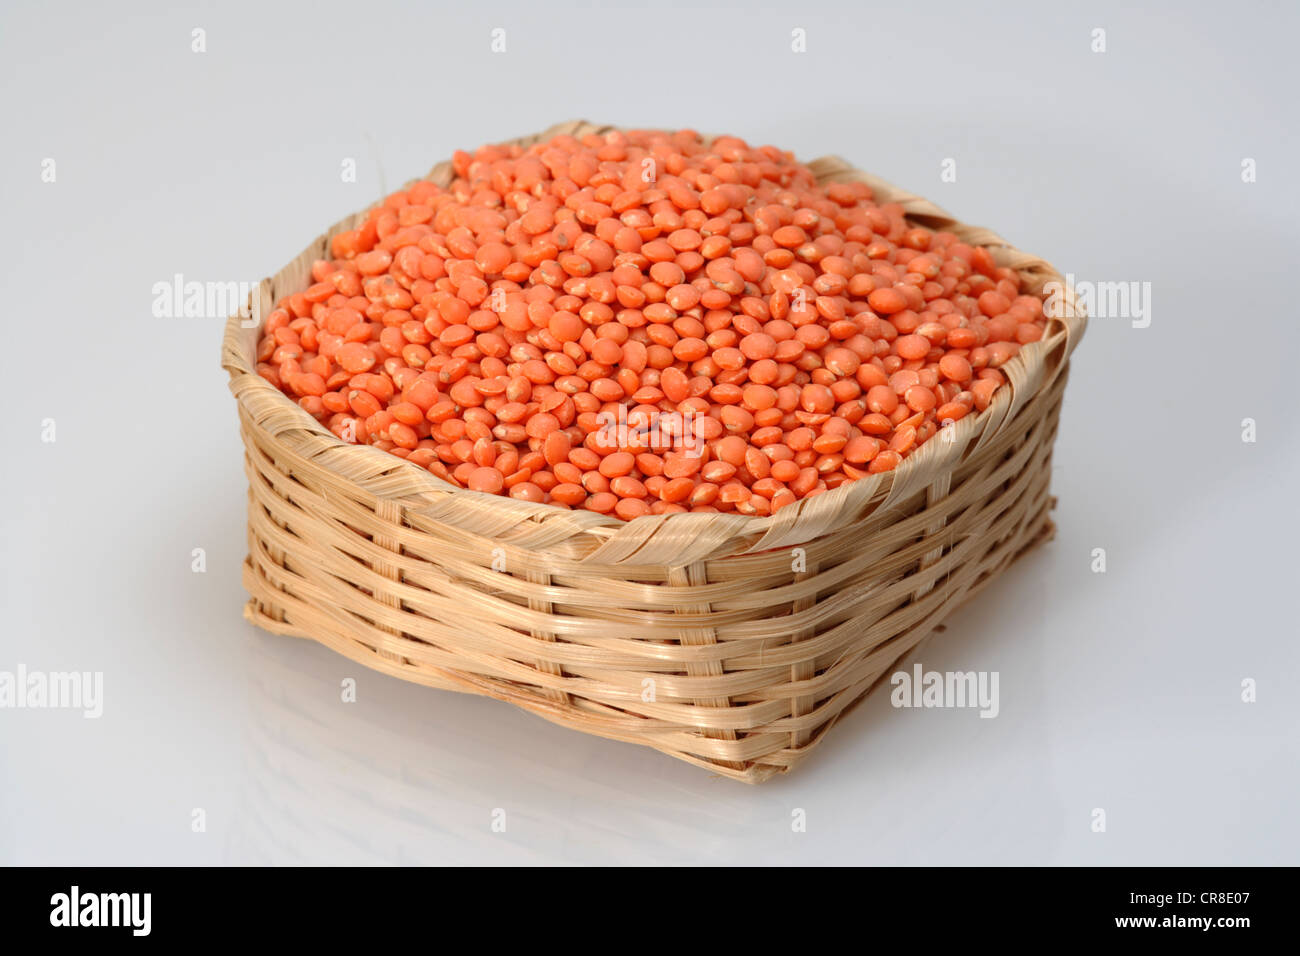 Lentilles rouges (Lens culinaris), dans un panier Banque D'Images